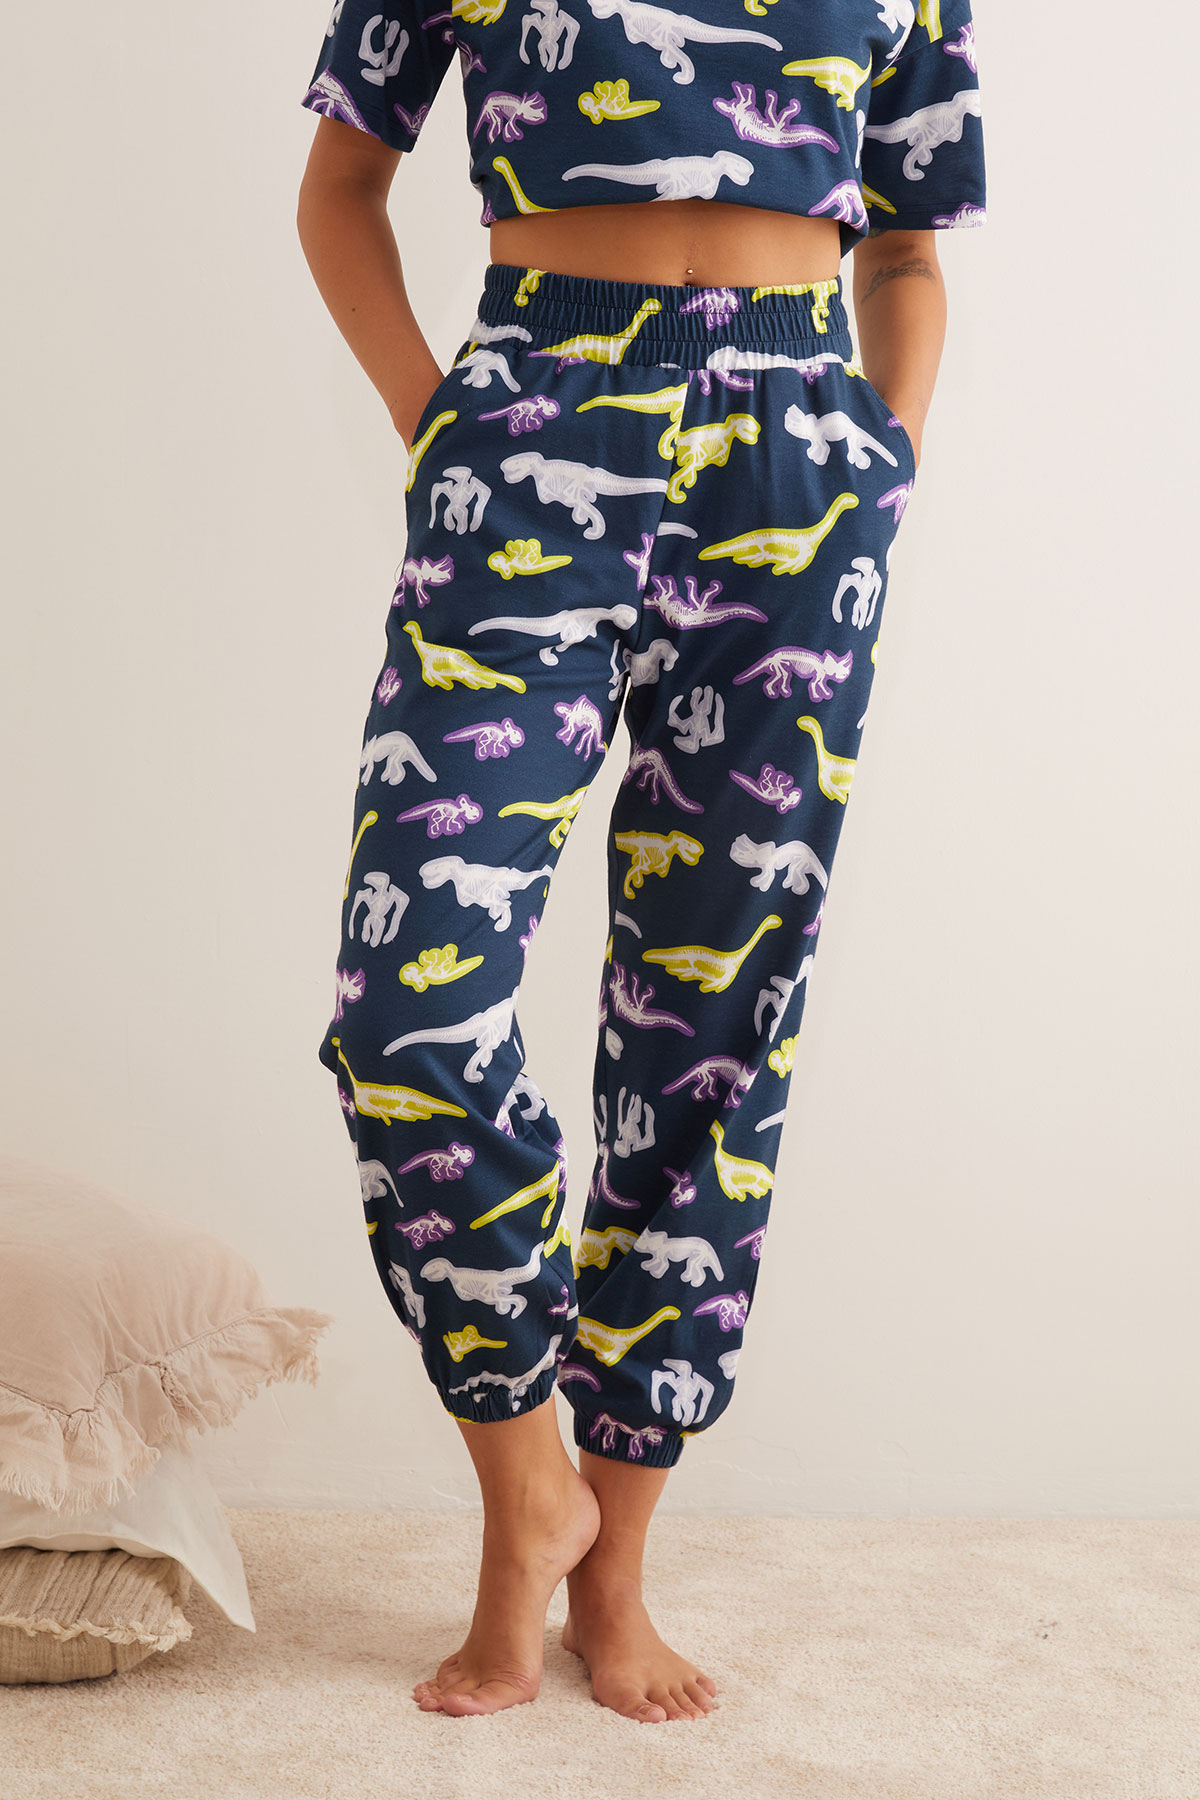 Kadın Pamuklu Dinozor Baskılı Kısa Kollu Uzun Pijama Takımı